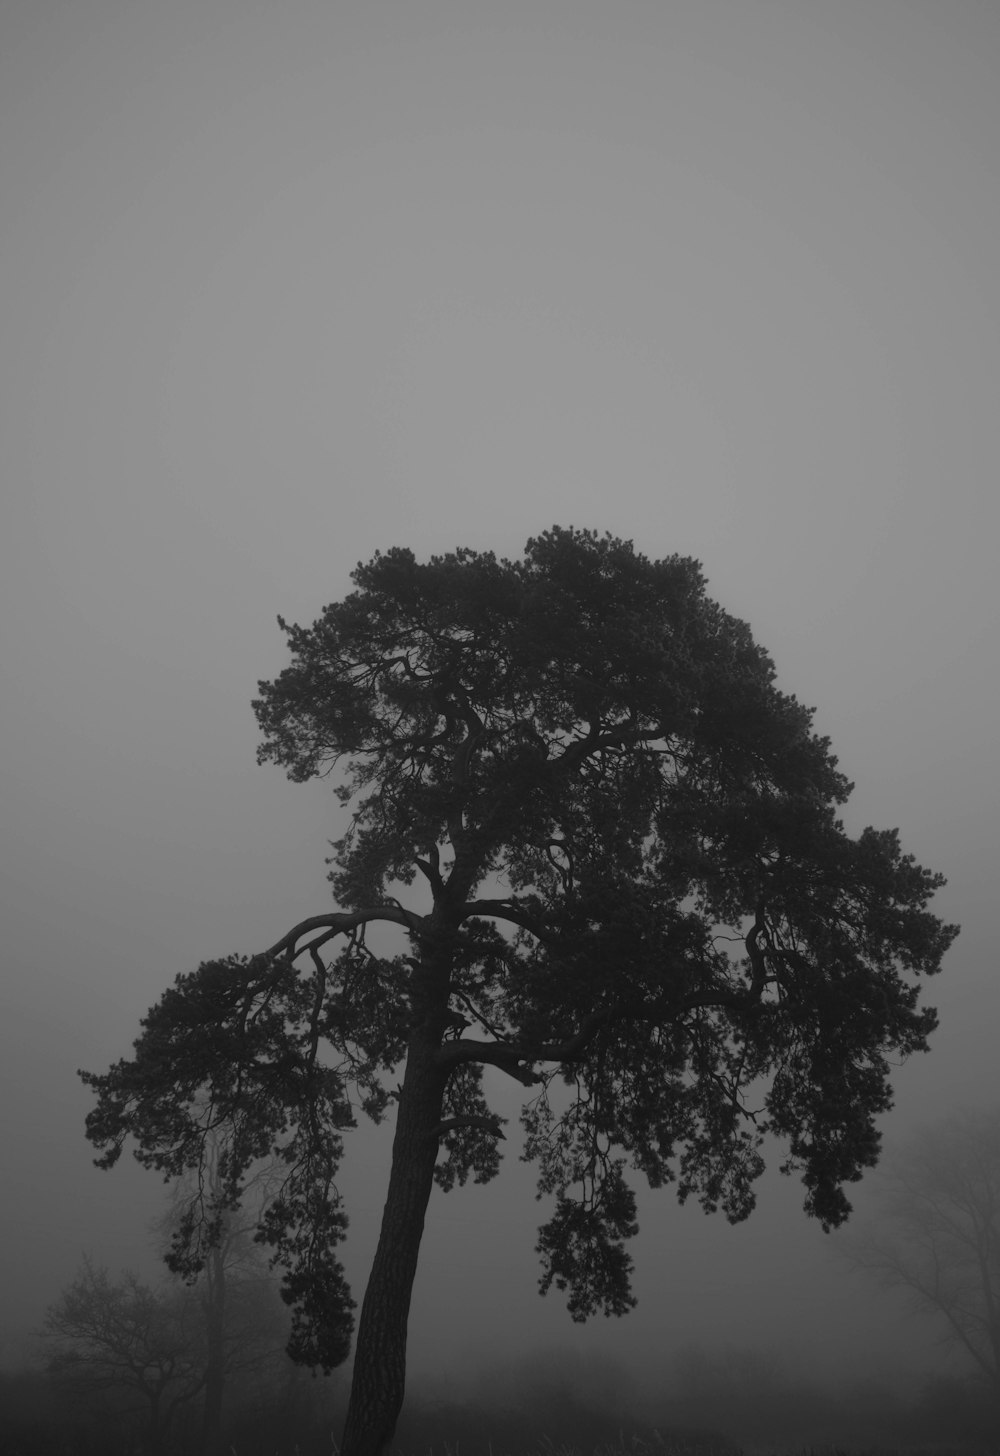 안개 속의 나무의 흑백 사진